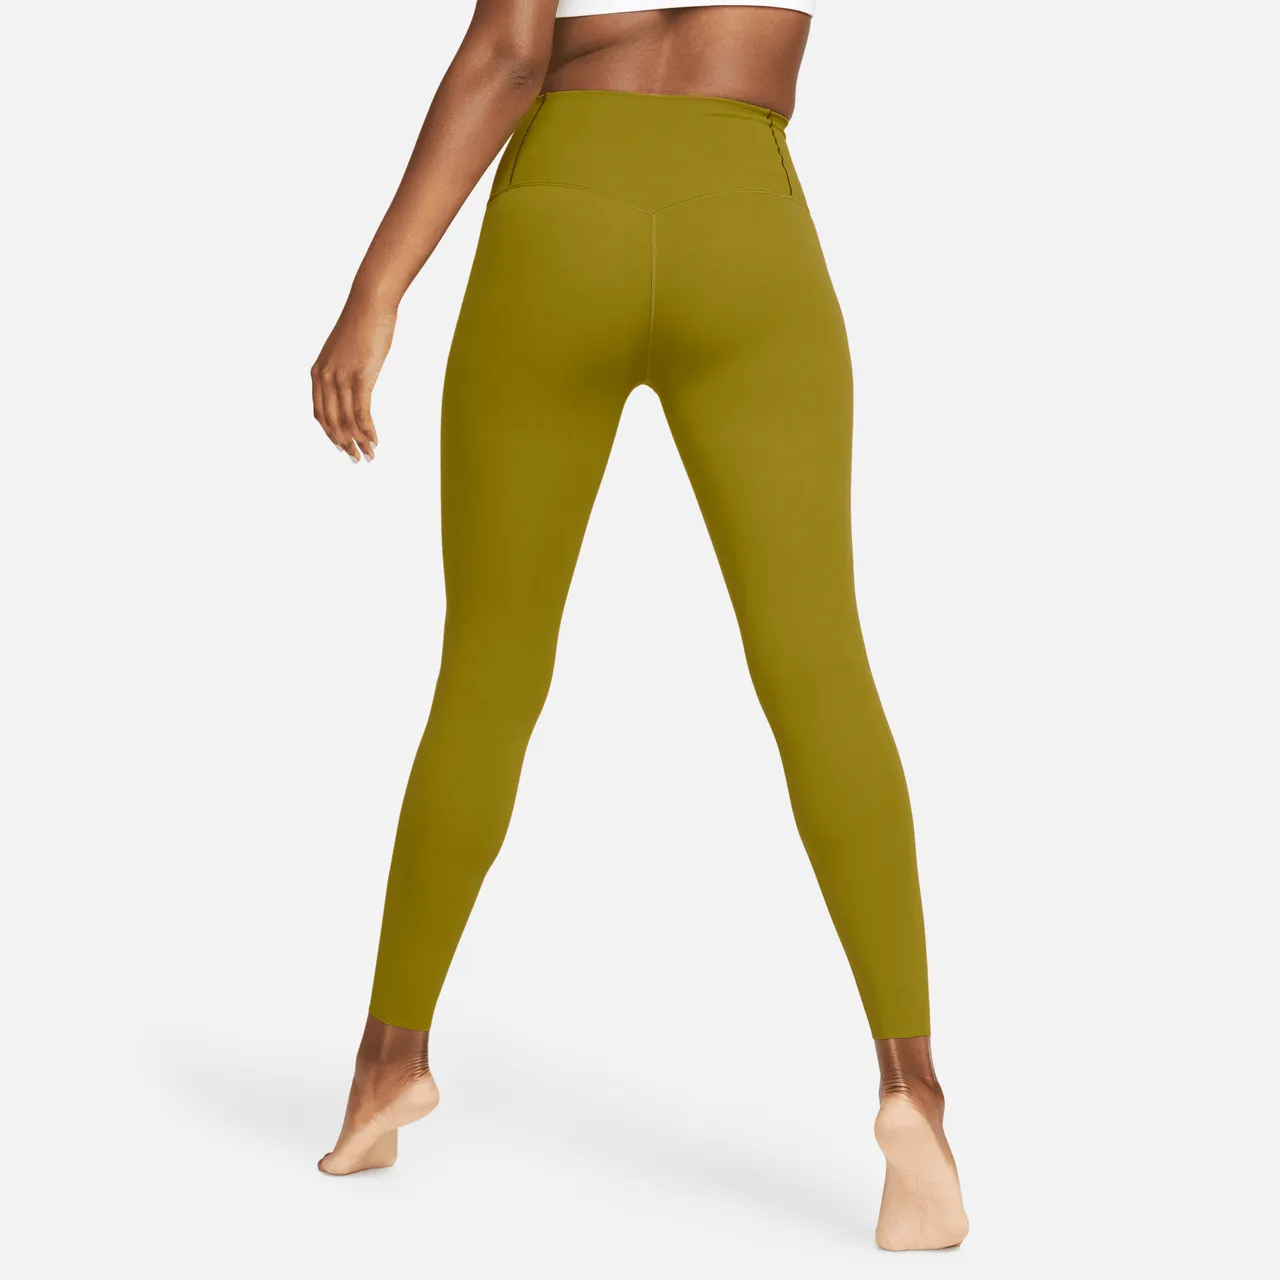 Nike Zenvy Women's Gentle-Support High-Waisted 7/8 Leggings - Green - Nylon